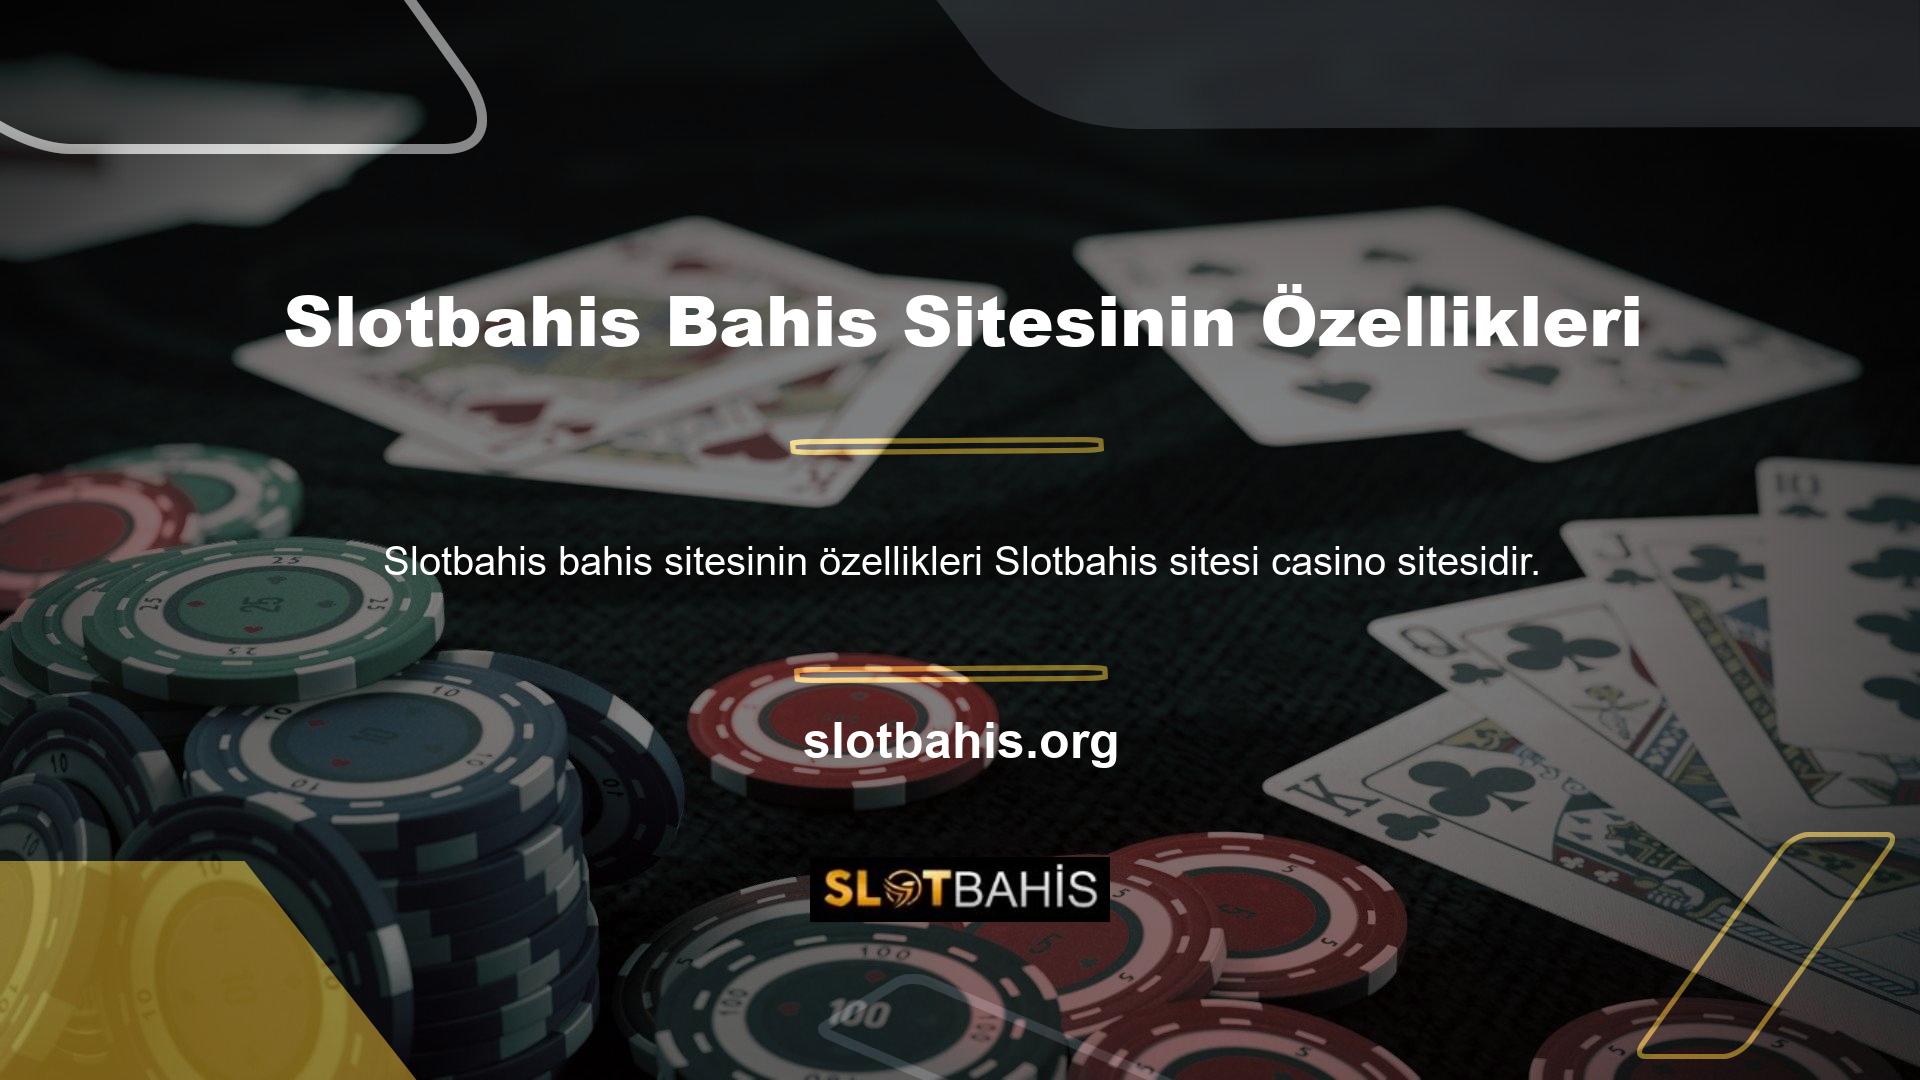 Slotbahis mobil casino bahis sitesinin özelliklerinin yanı sıra casino oyunlarımızı da gönül rahatlığıyla oynayabilirsiniz